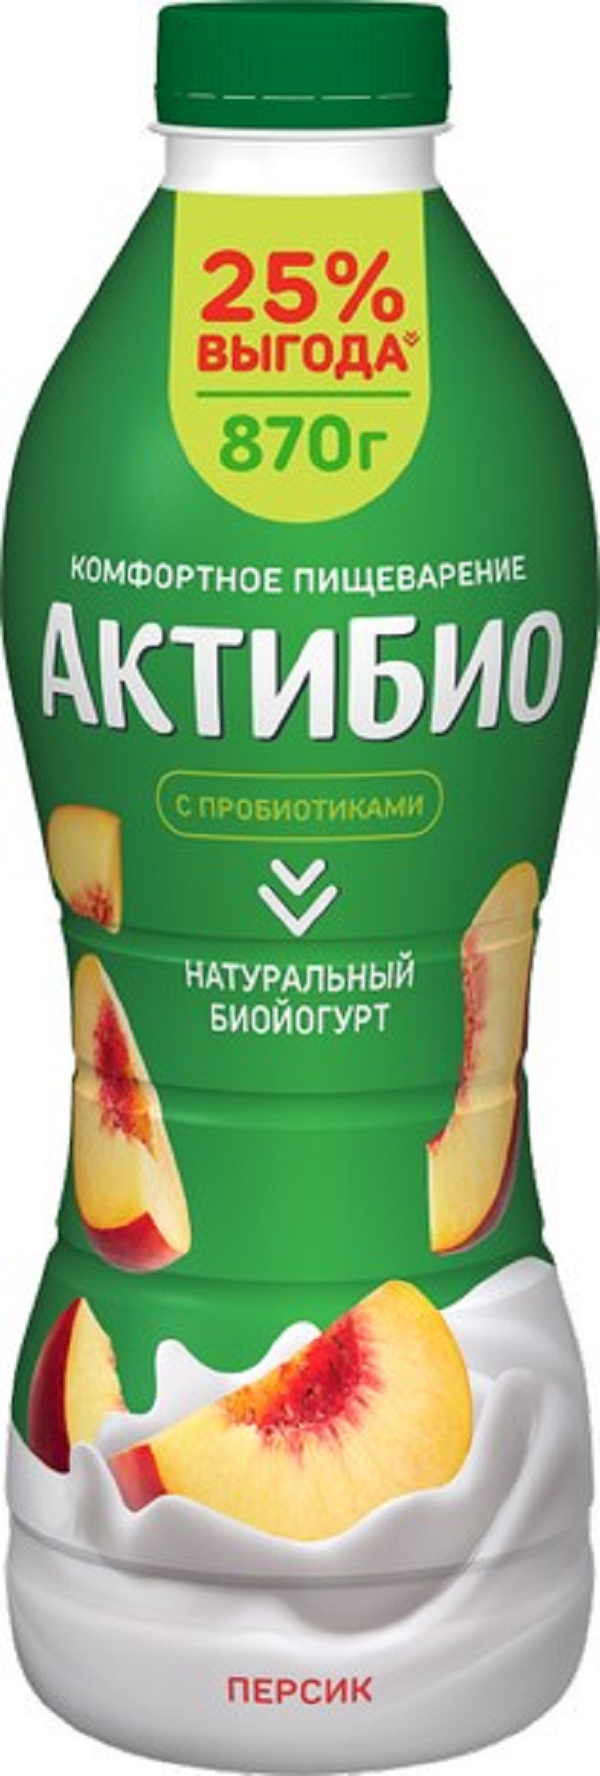 Йогурт АктиБио питьевой, с персиком, 1,5%, 870 г